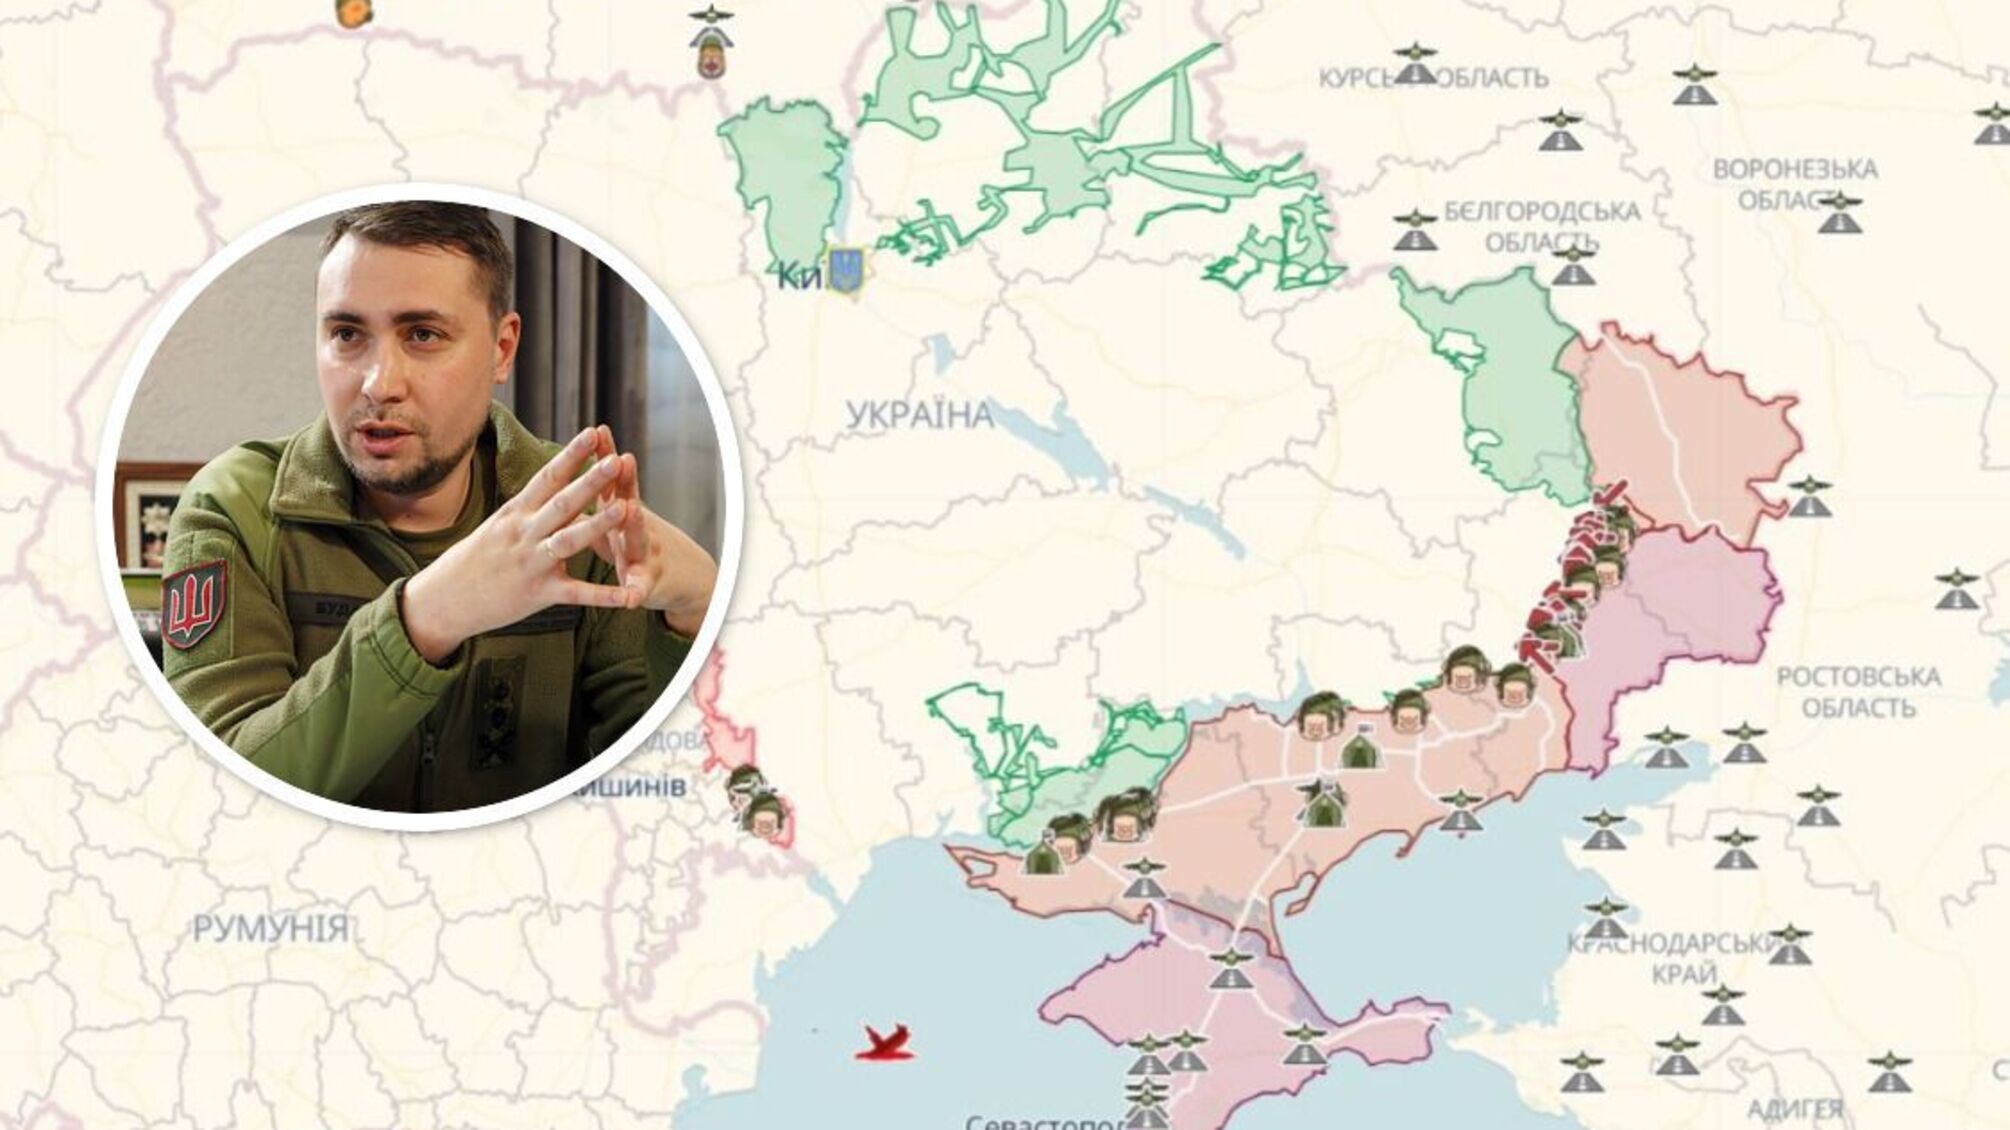 Буданов о новой фазе войны, Бахмуте и возвращении Крыма